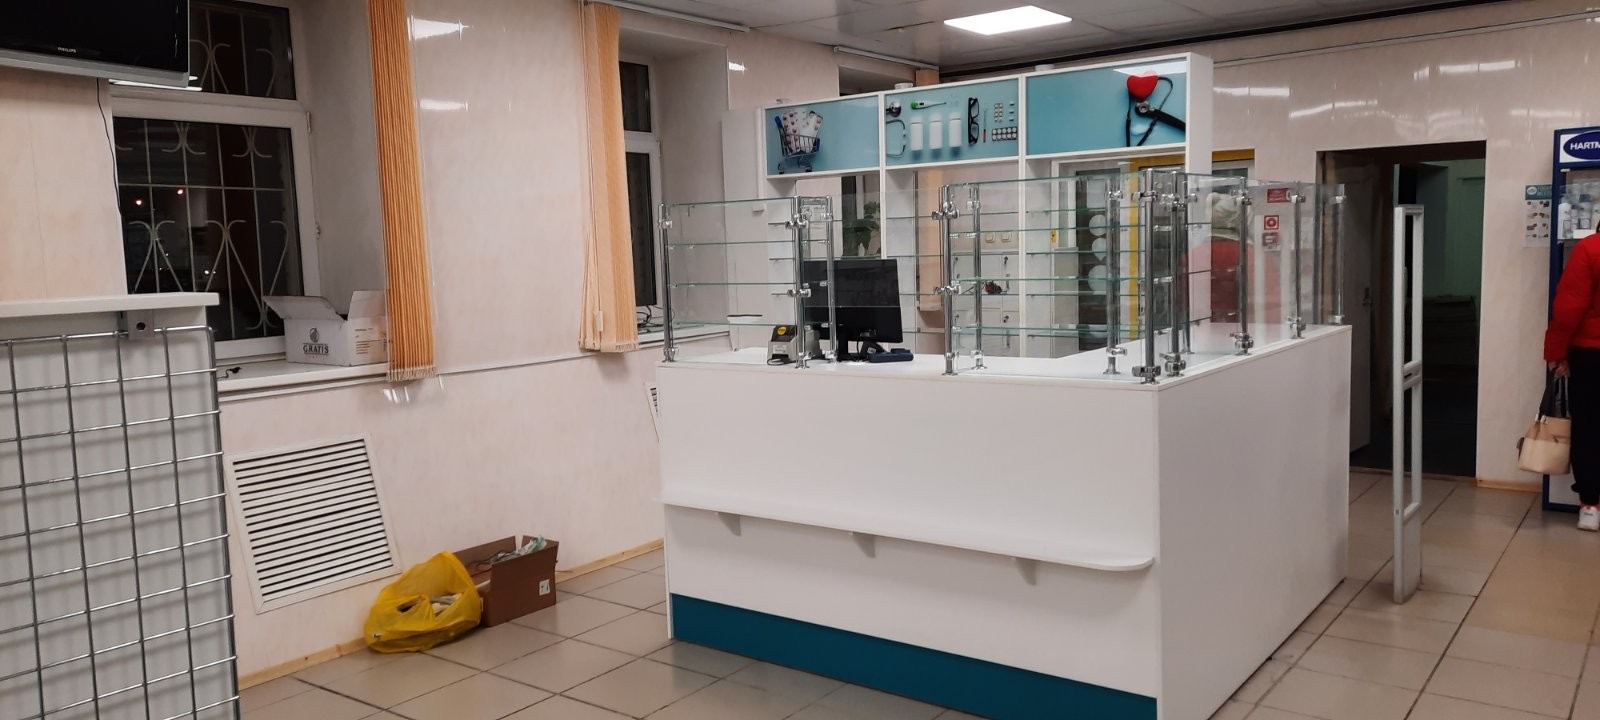 Областной аптечный склад, Челябинск и область 3